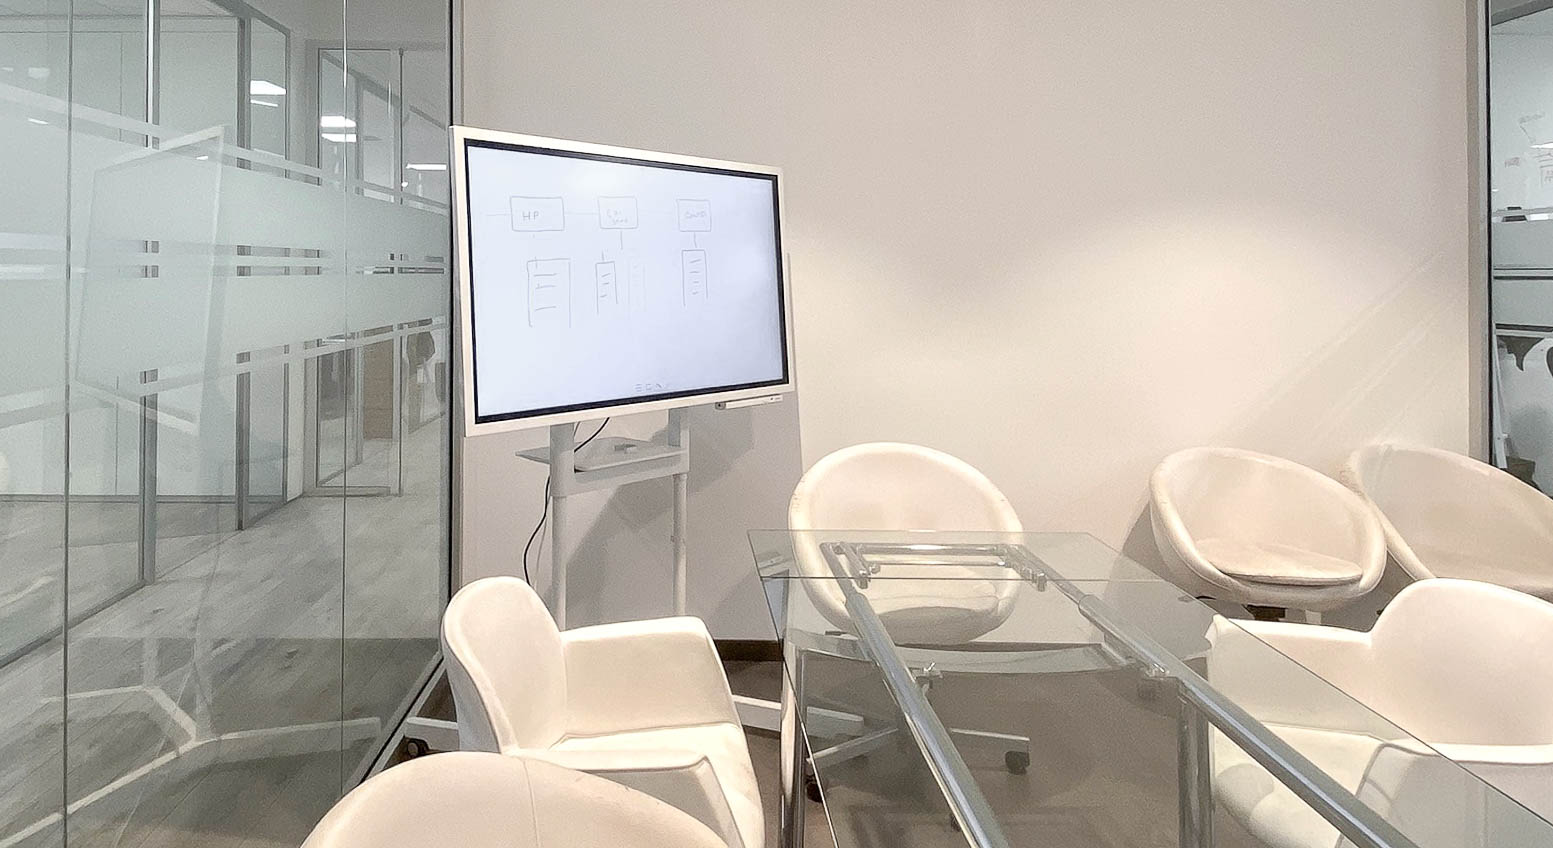 Lavagna interattiva IWB Samsung Flip da 55 pollici su stand mobile e orientabile posizionata in una sala riunioni